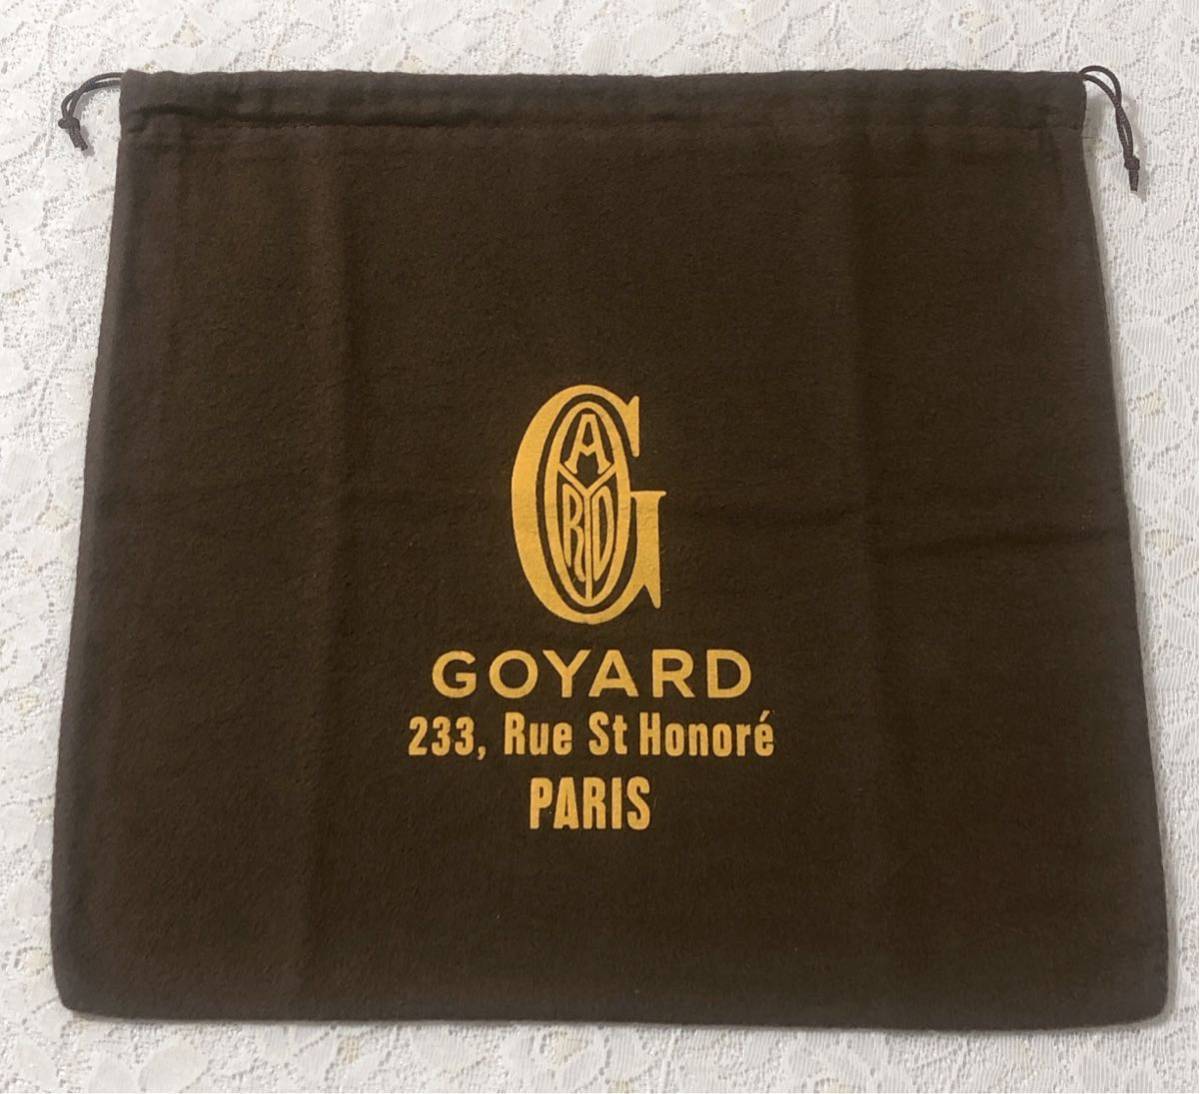 ゴヤール「GOYARD」バッグ保存袋 (3363) 正規品 付属品 内袋 布袋 巾着袋 布製 起毛生地 ブラウン 35×34cm 小さめ_画像1